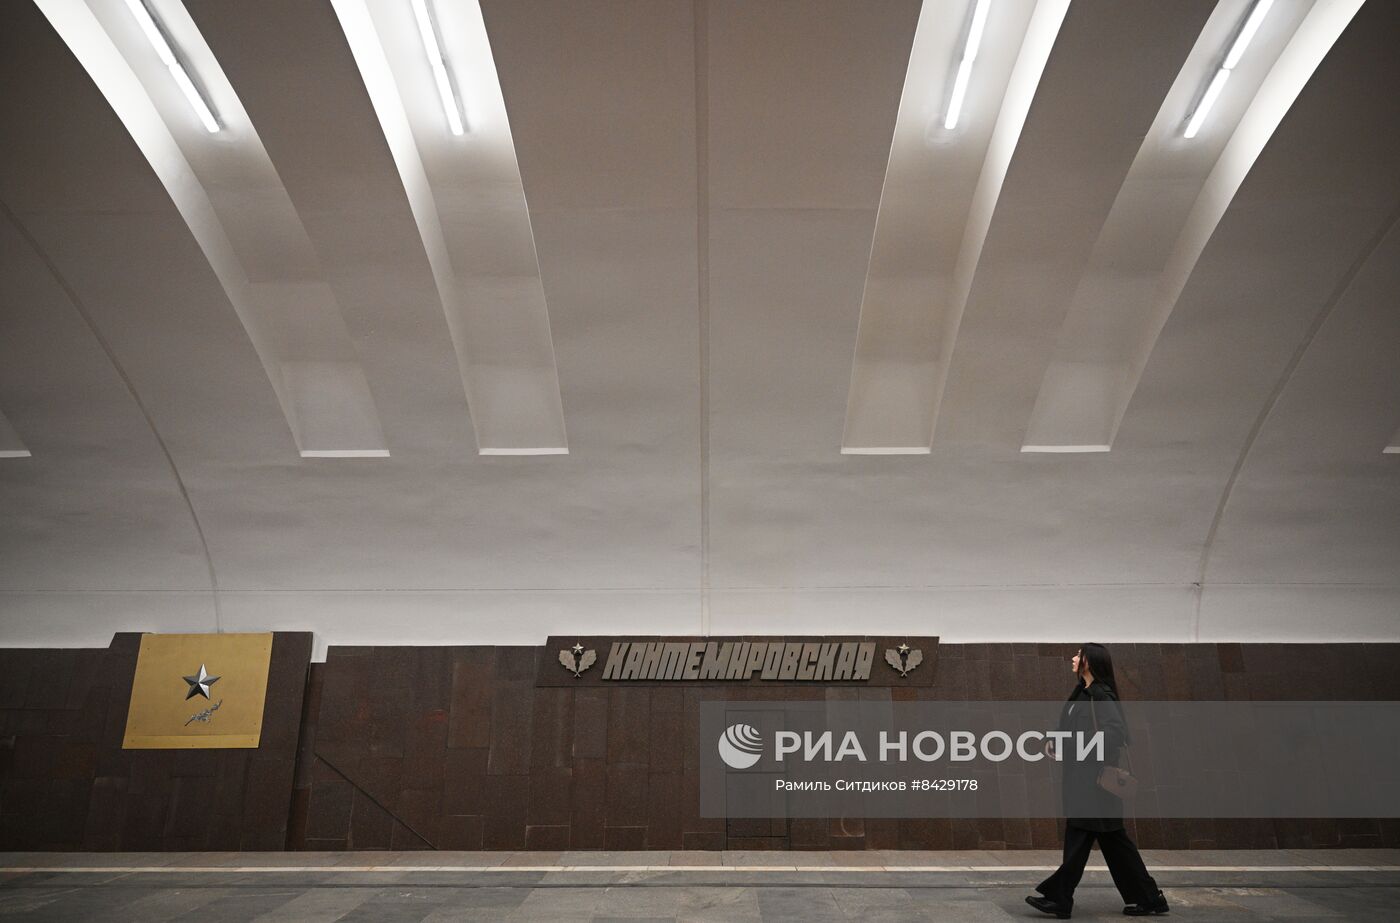 Открытие участка метро между станциями "Орехово" и "Автозаводская"